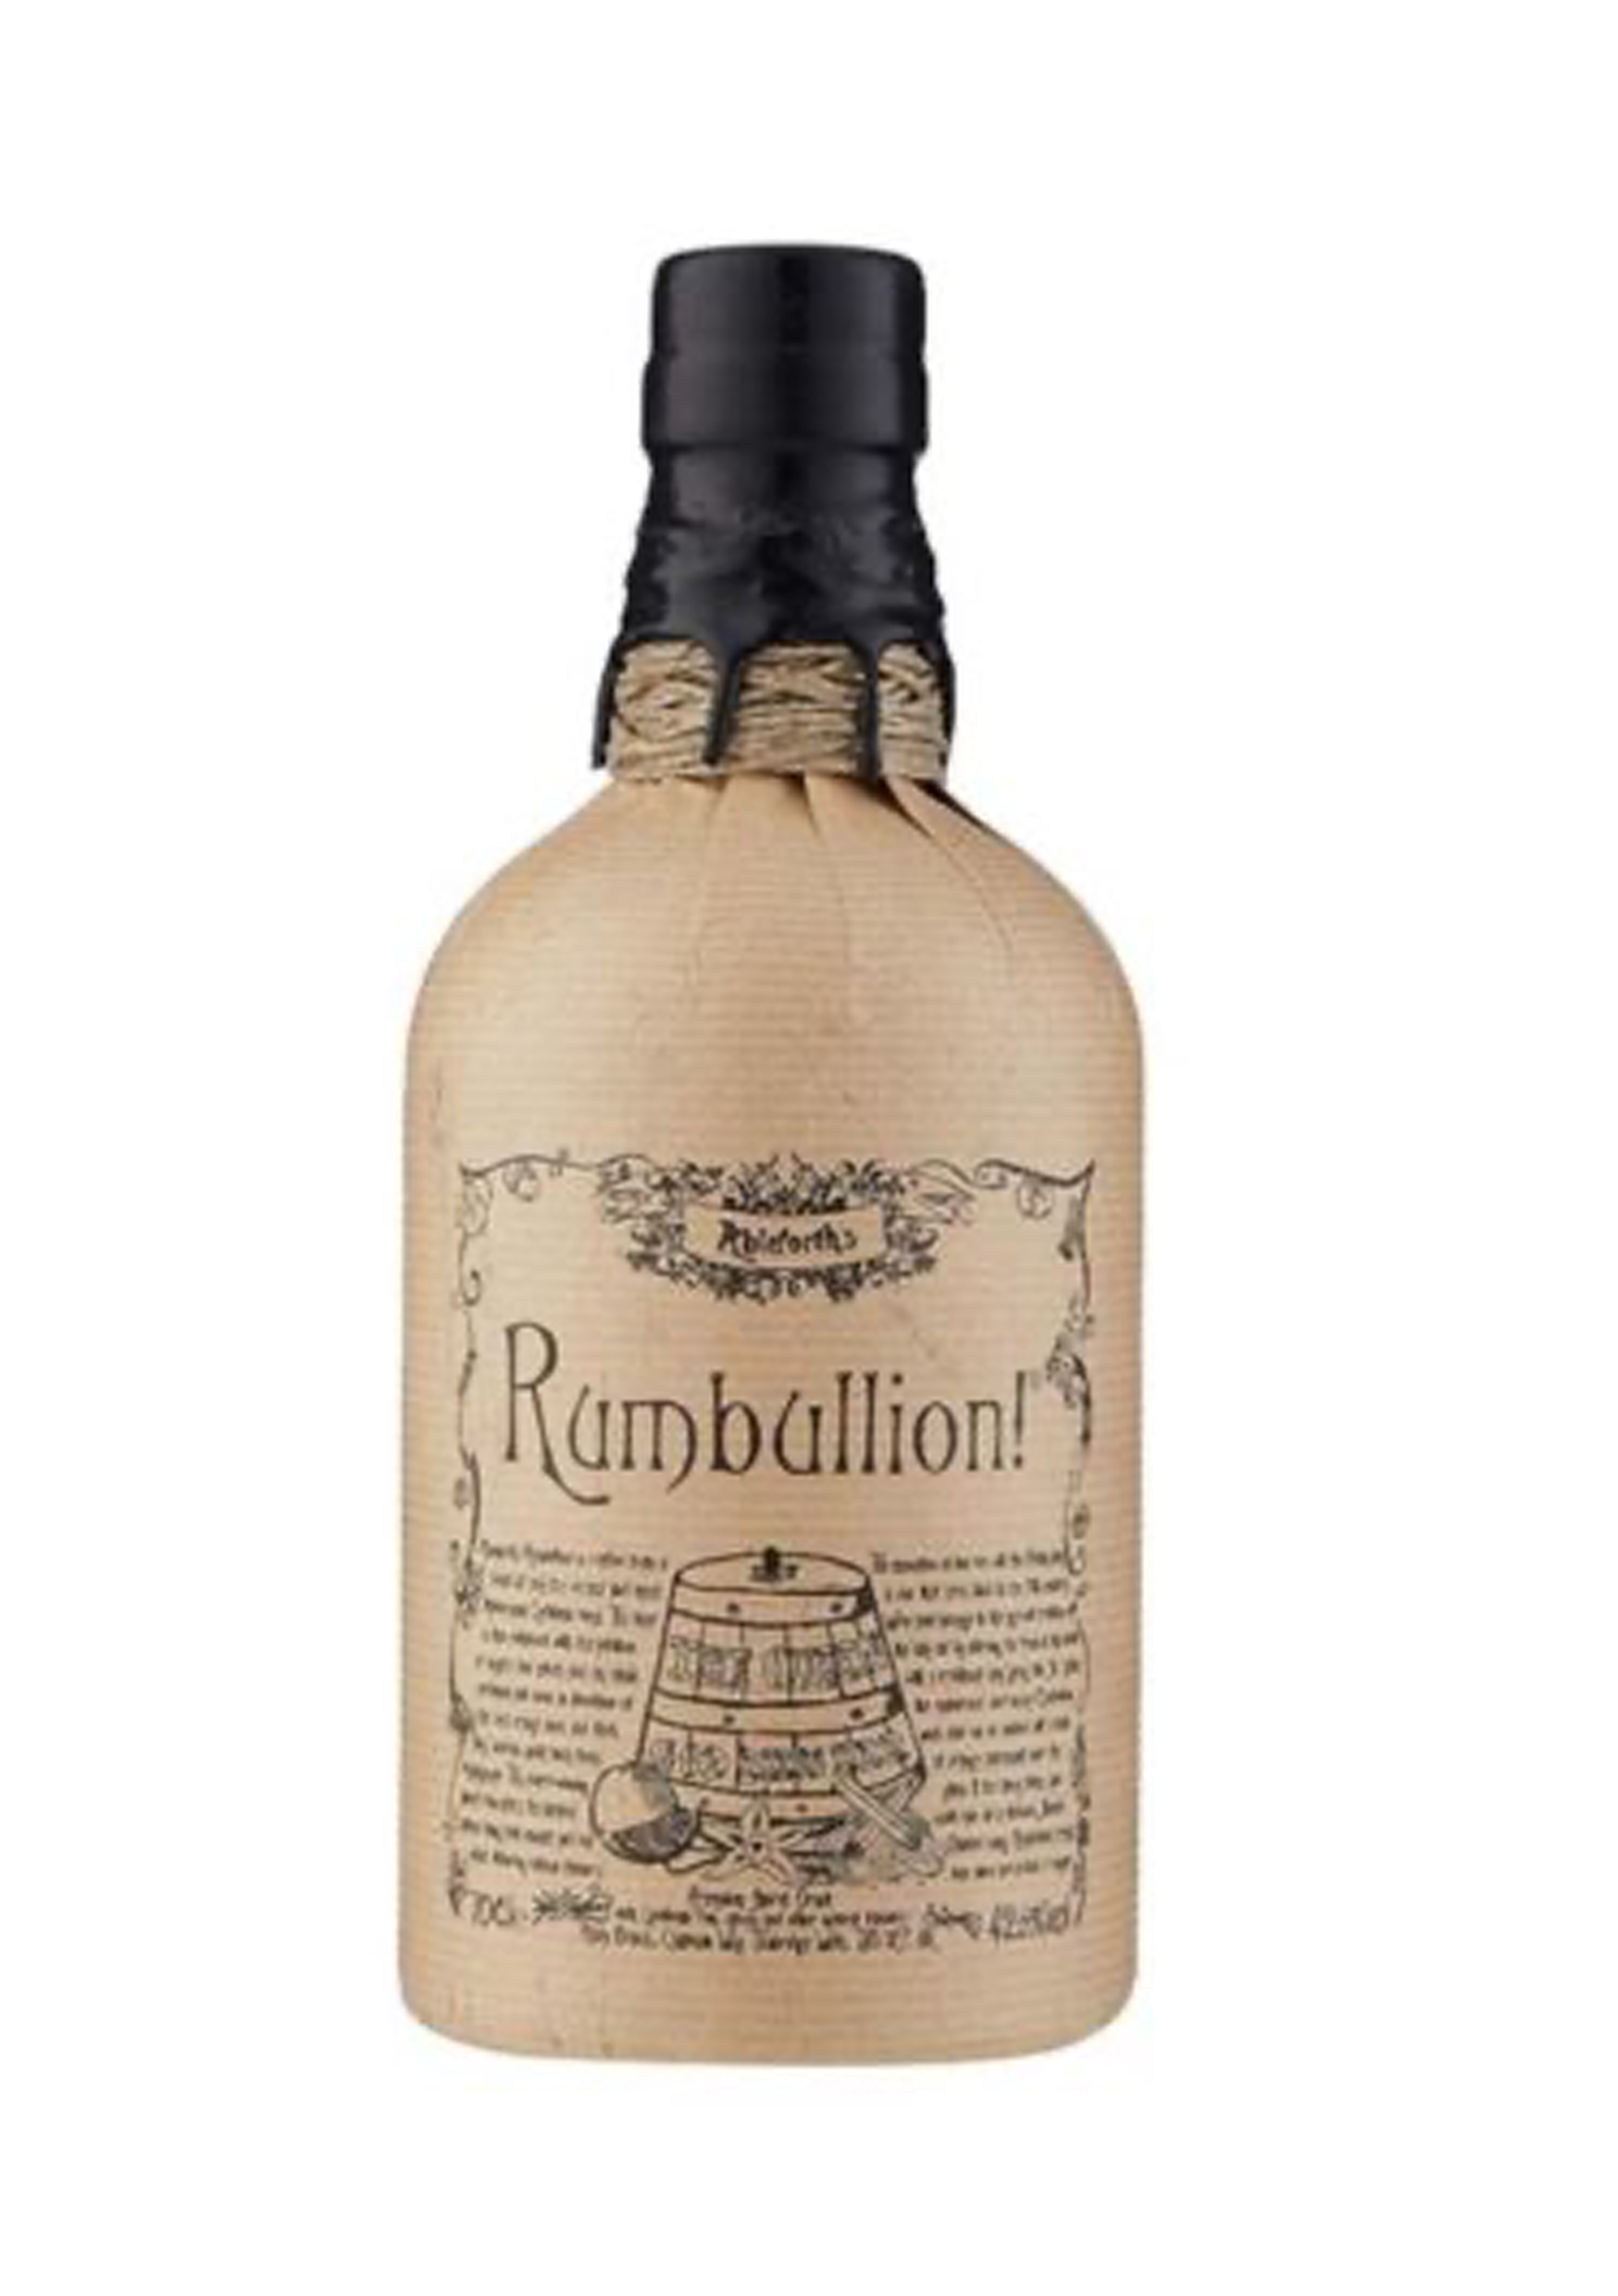 Ableforths Rumbullion Rum